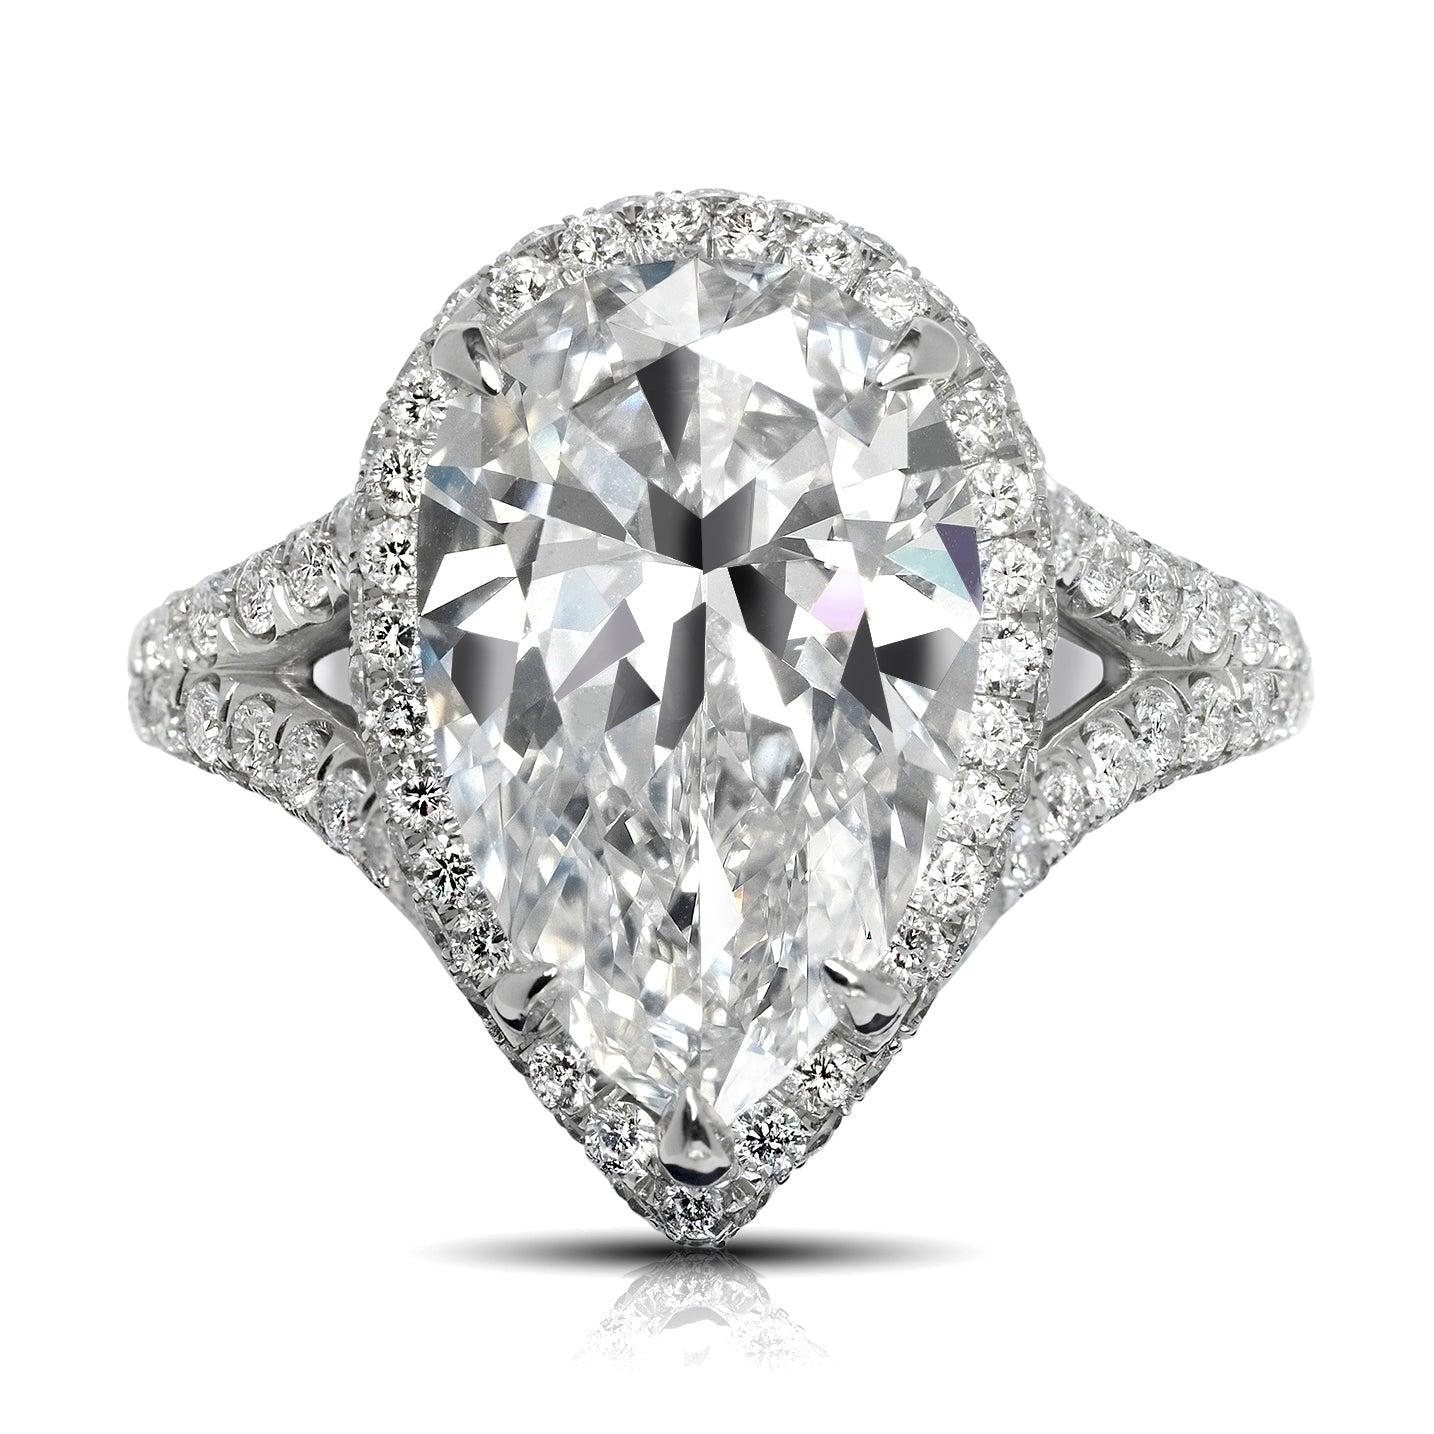 NATALIE 5 KARAT BIRNE DIAMANT VERLOBUNGSRING PLATIN VON MIKE NEKTA

Diamant in der Mitte:
Karatgewicht: 5 Karat
Farbe: E*
Klarheit: INTERN LUPENREIN - WENN
Stil:  BIRNENFORM
Ungefähre Maße: 14,8 x 9,5 x 5,8 mm
* Dieser Diamant wurde mit einem oder